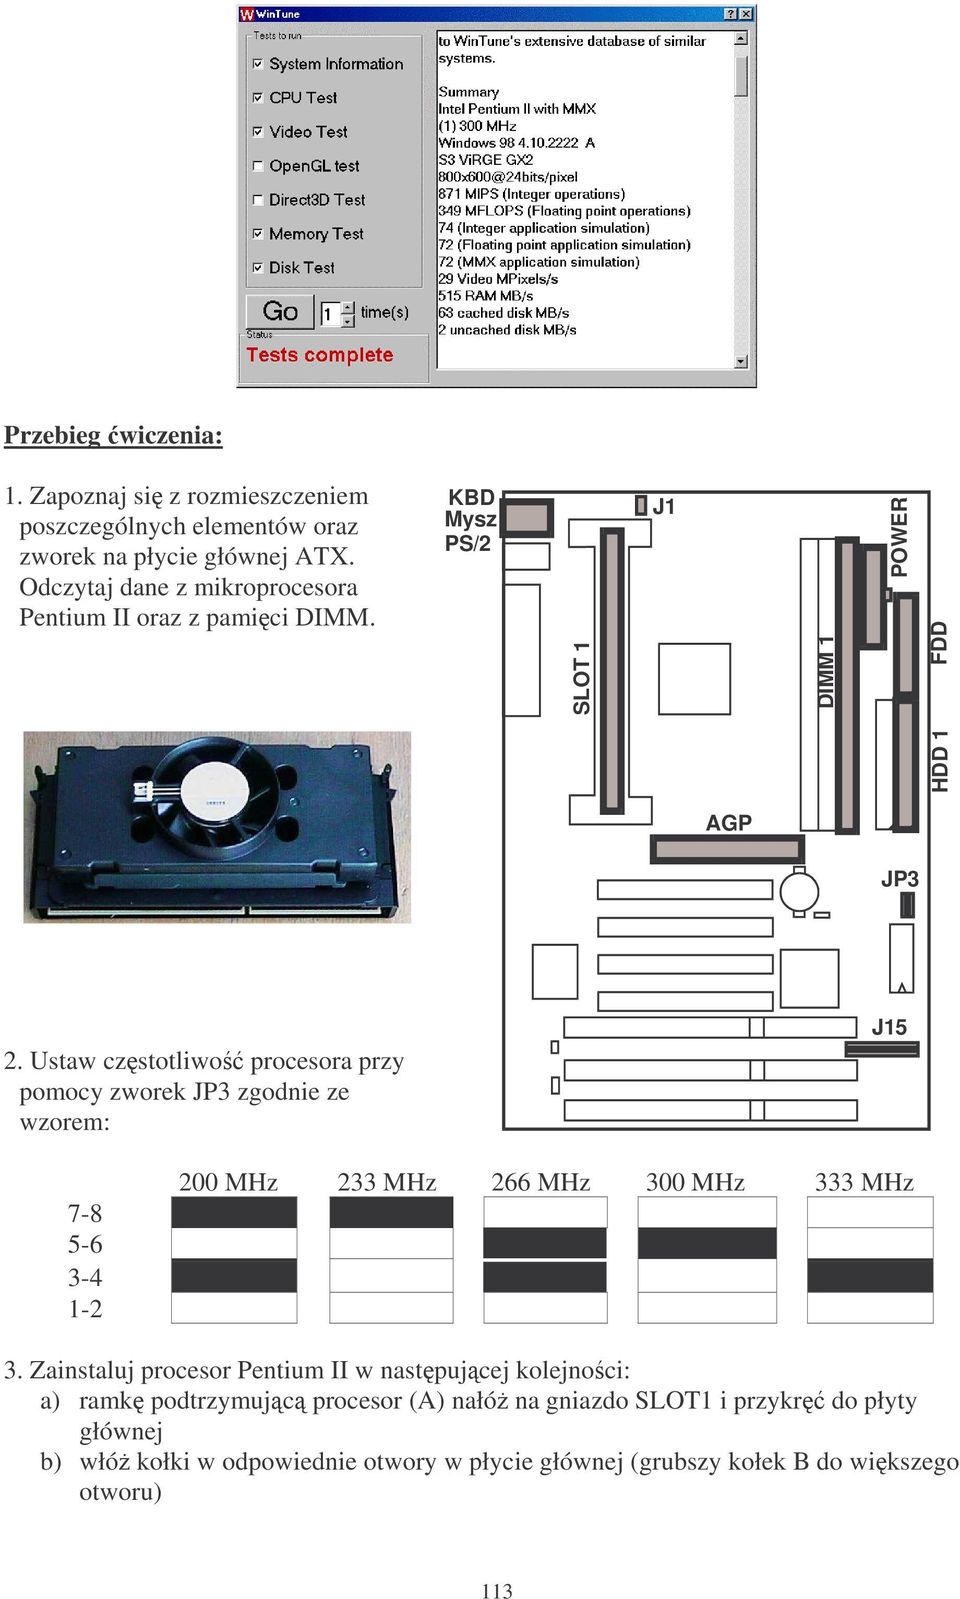 Ustaw czstotliwo procesora przy pomocy zworek JP3 zgodnie ze wzorem: J15 7-8 5-6 3-4 1-2 200 MHz 233 MHz 266 MHz 300 MHz 333 MHz 3.